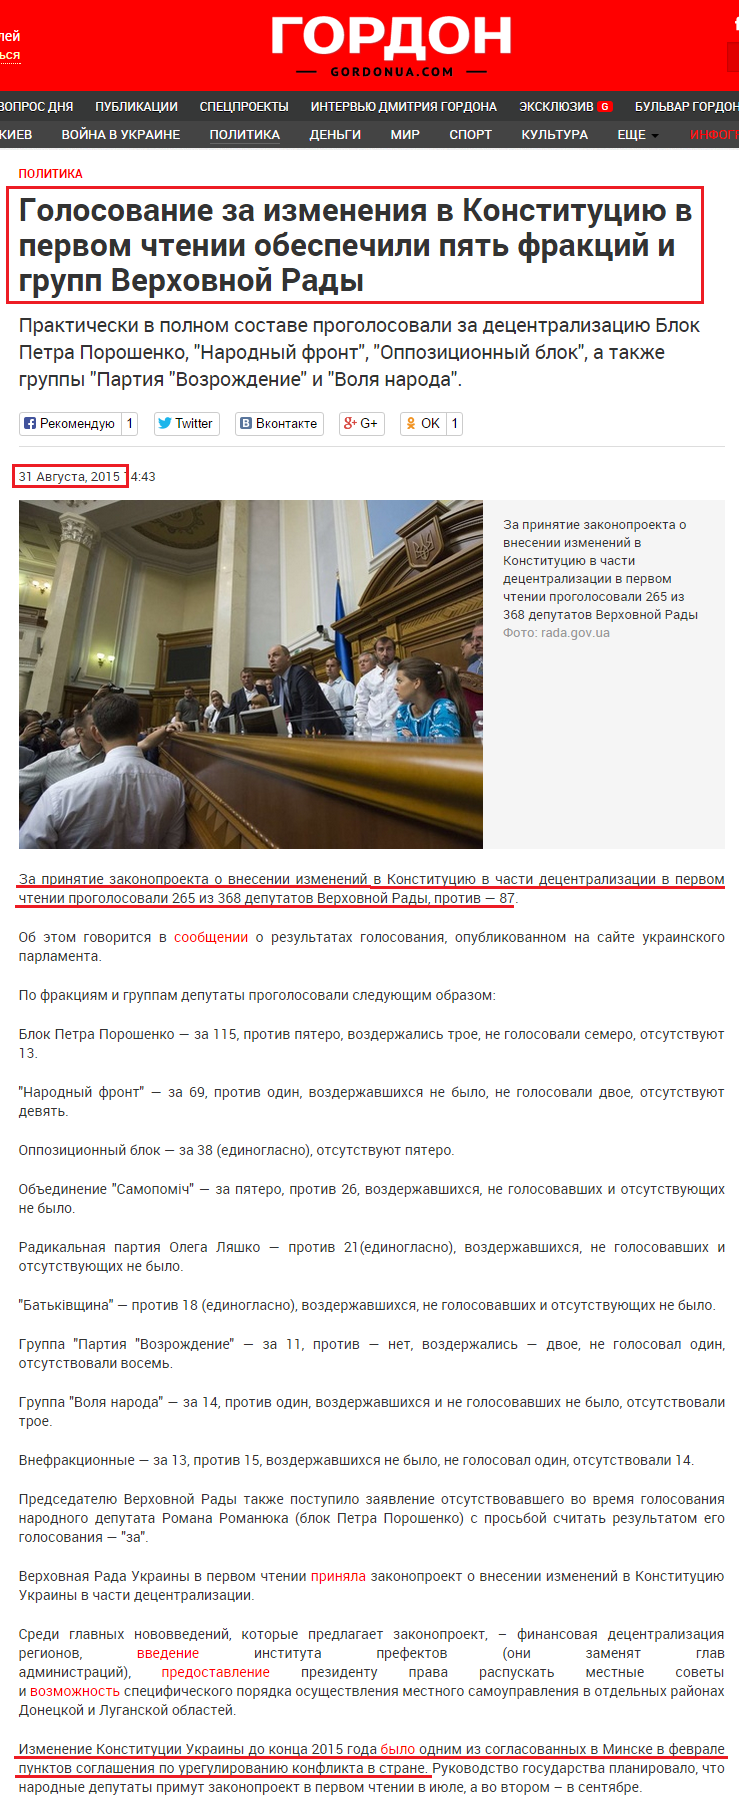 http://gordonua.com/news/politics/Golosovanie-za-izmeneniya-v-Konstituciyu-v-pervom-chtenii-obespechili-pyat-frakciy-i-grupp-Verhovnoy-Rady-96186.html